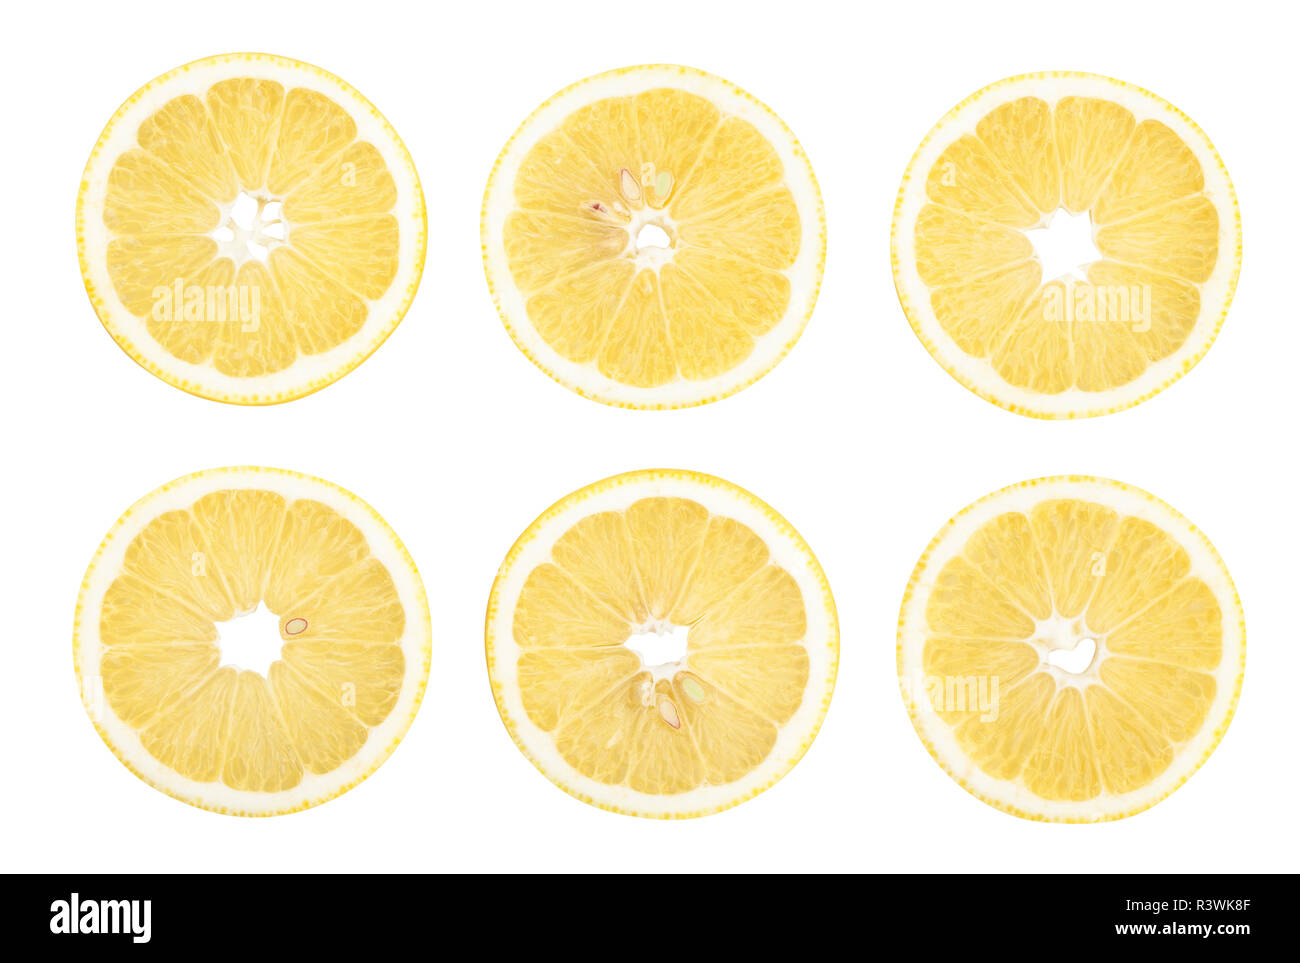 sliced lemon path isolated Stock Photo - Alamy